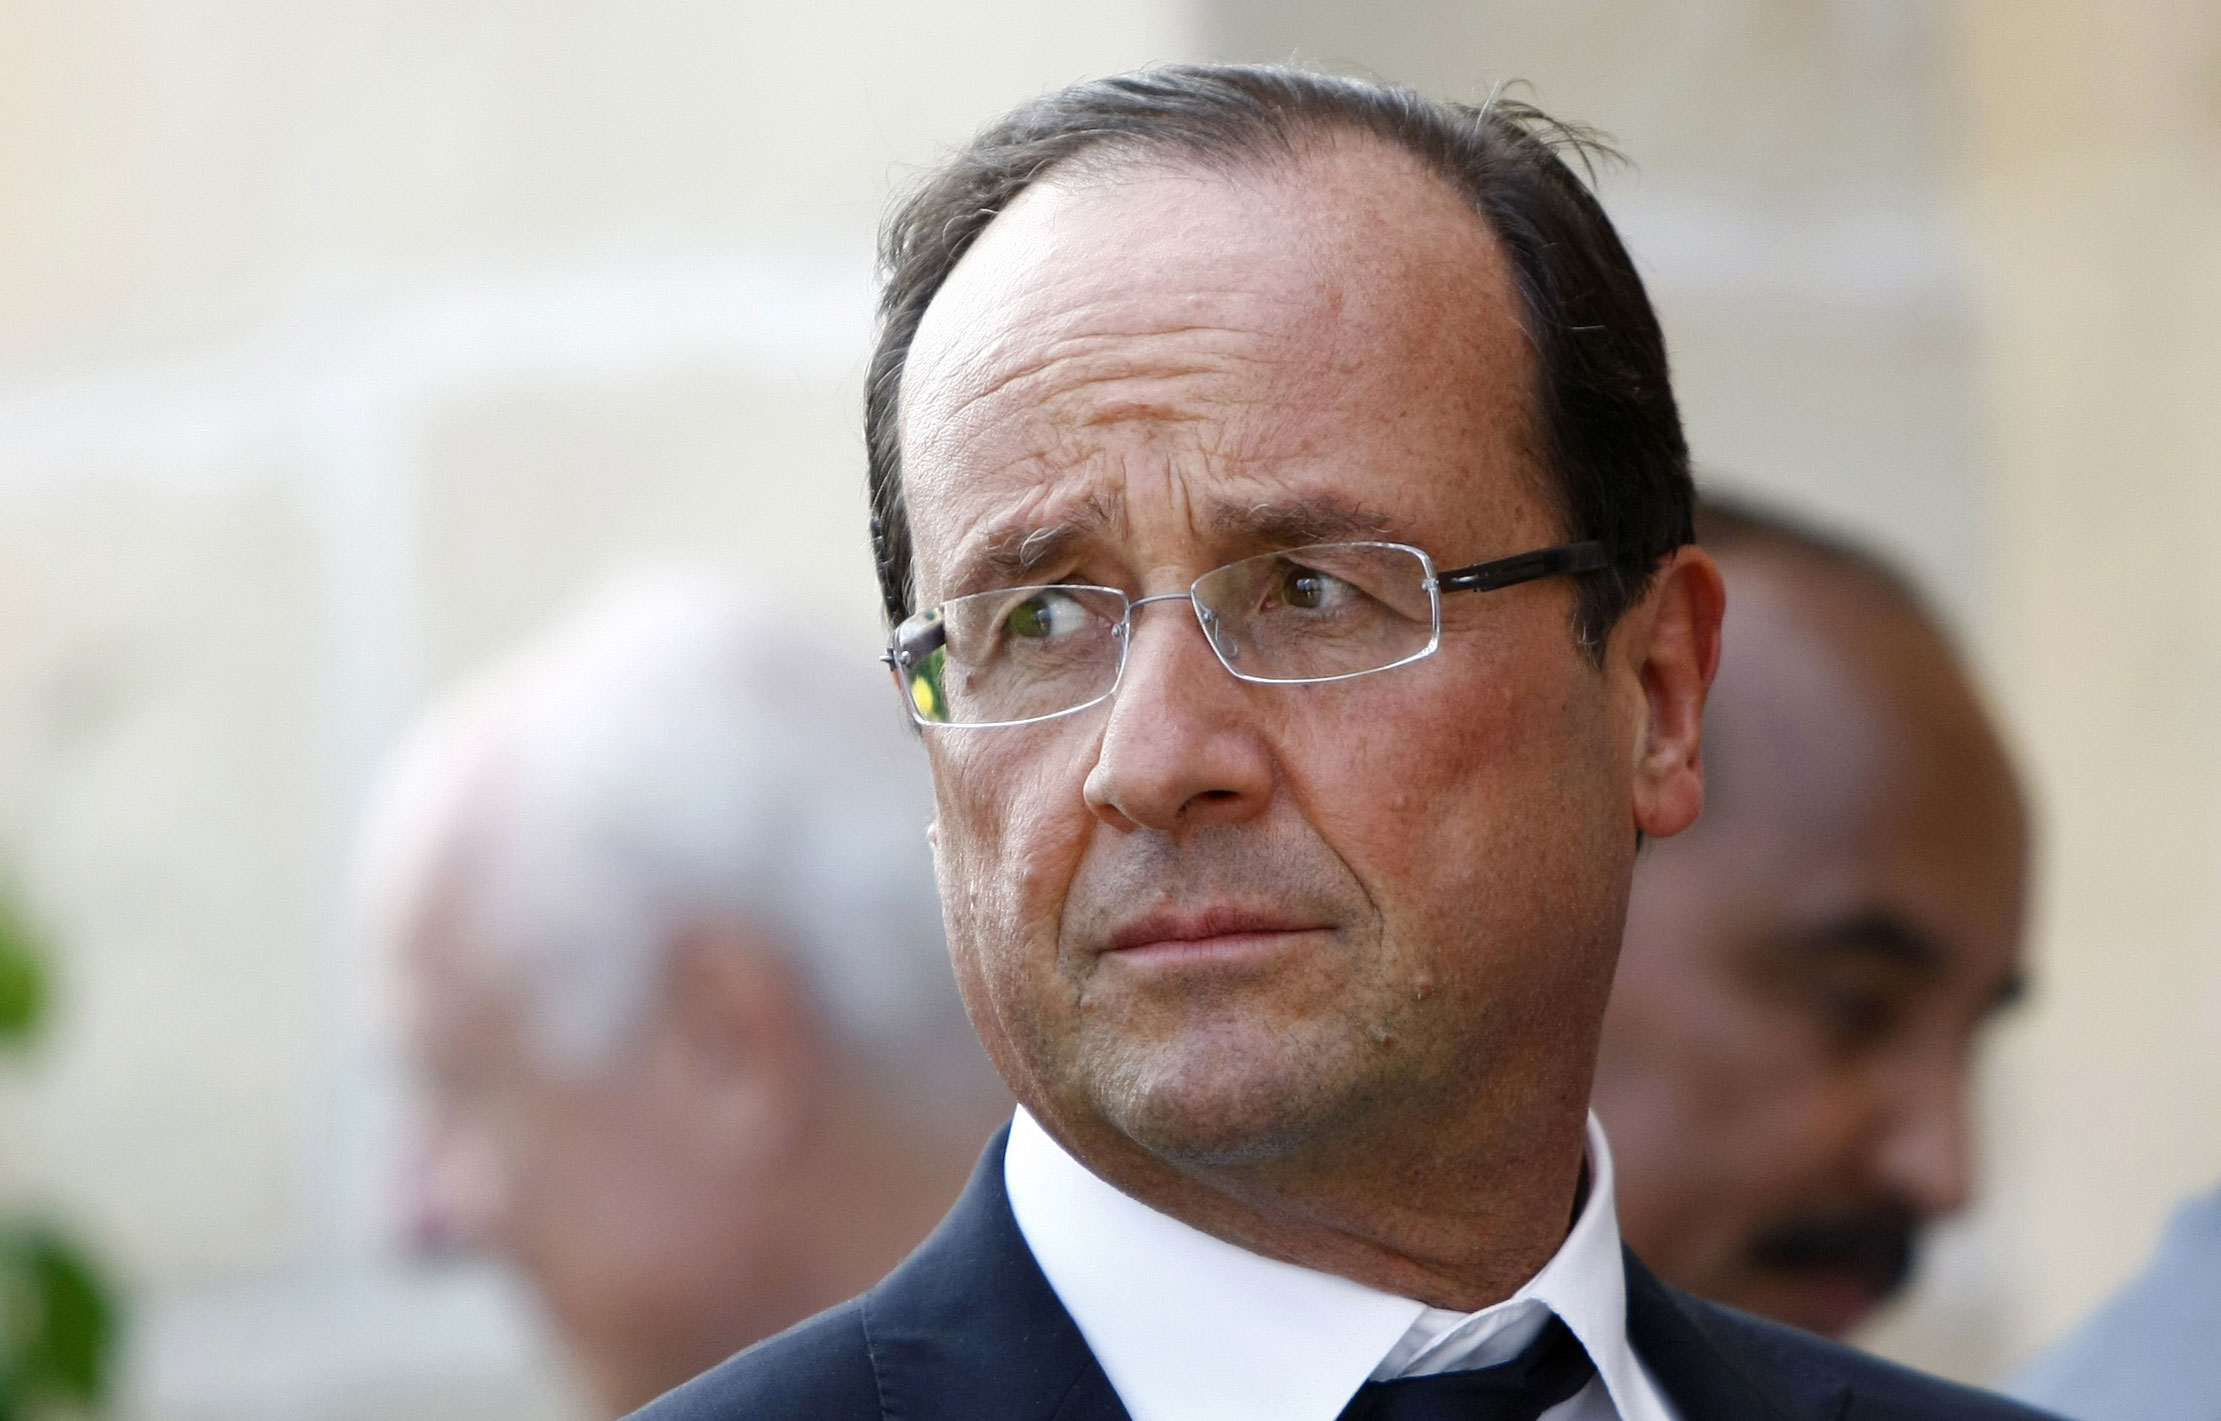 Hollande promete hacer «todo lo posible» para liberar a los rehenes en el hotel de Mali